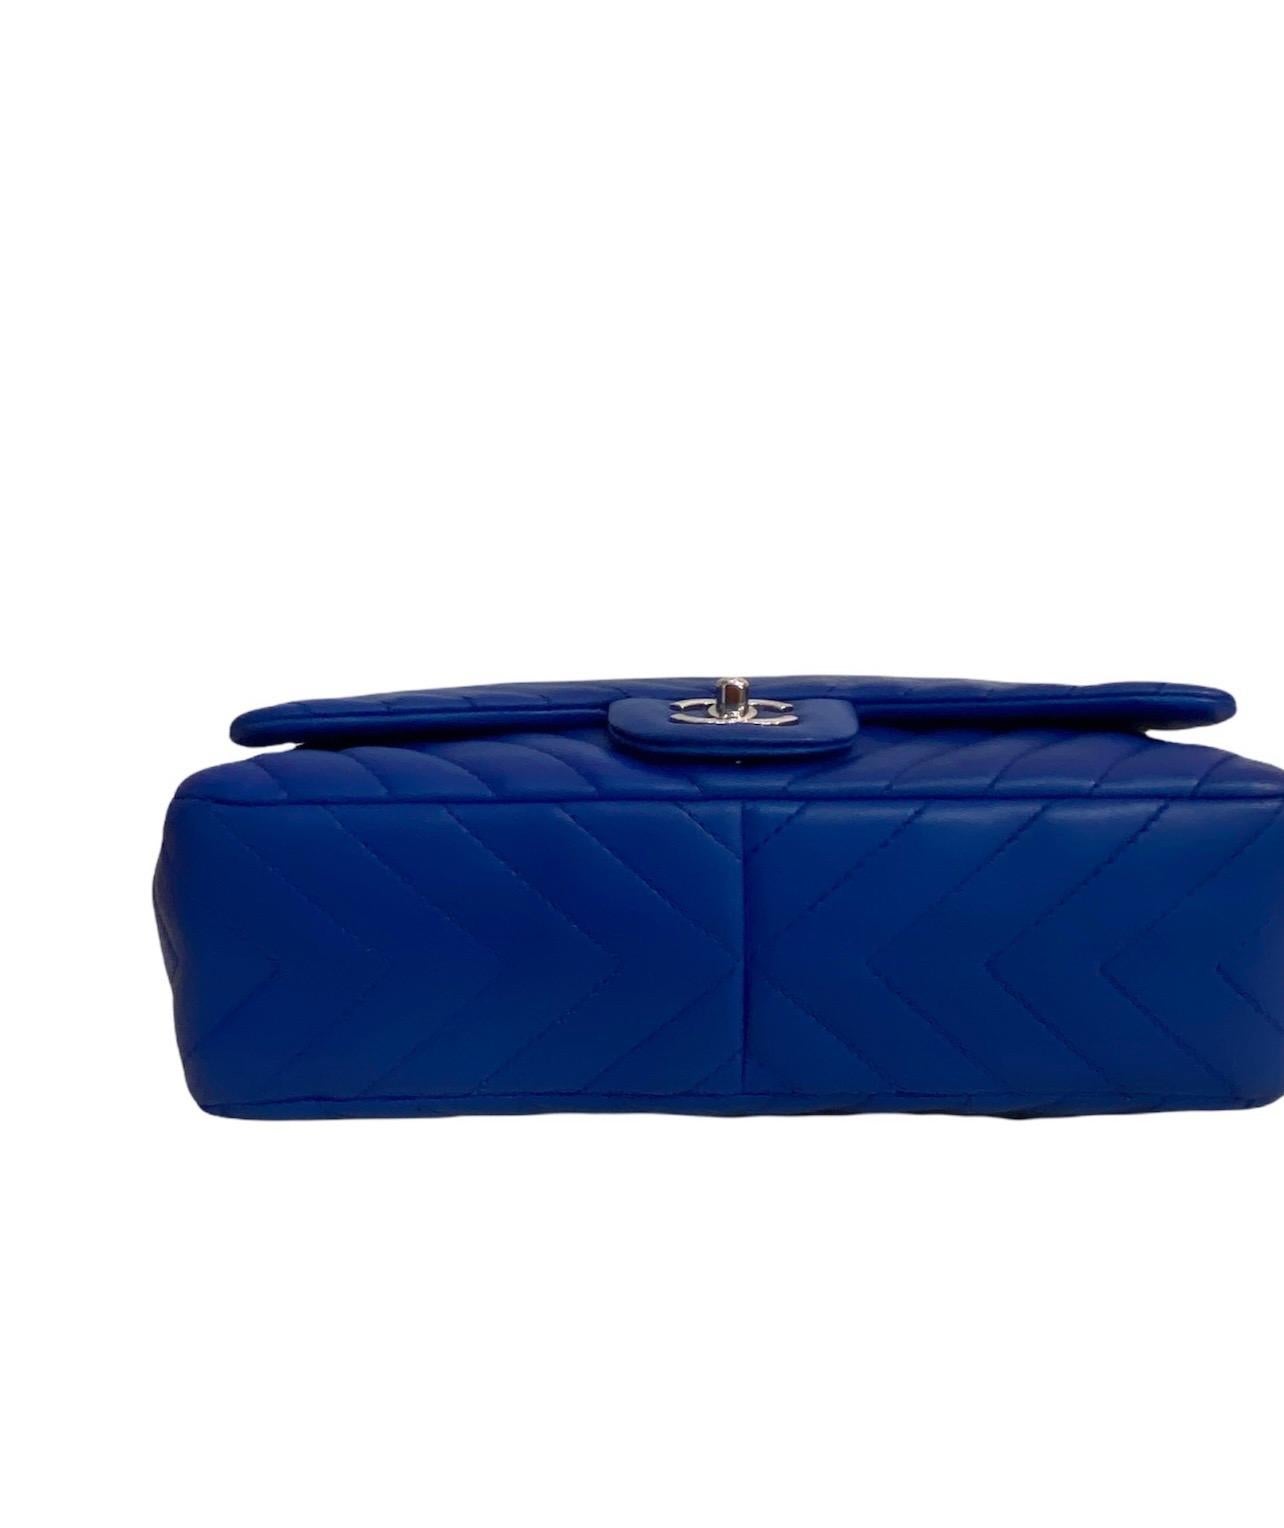 Chanel Blue Leather Jumbo Bag 1